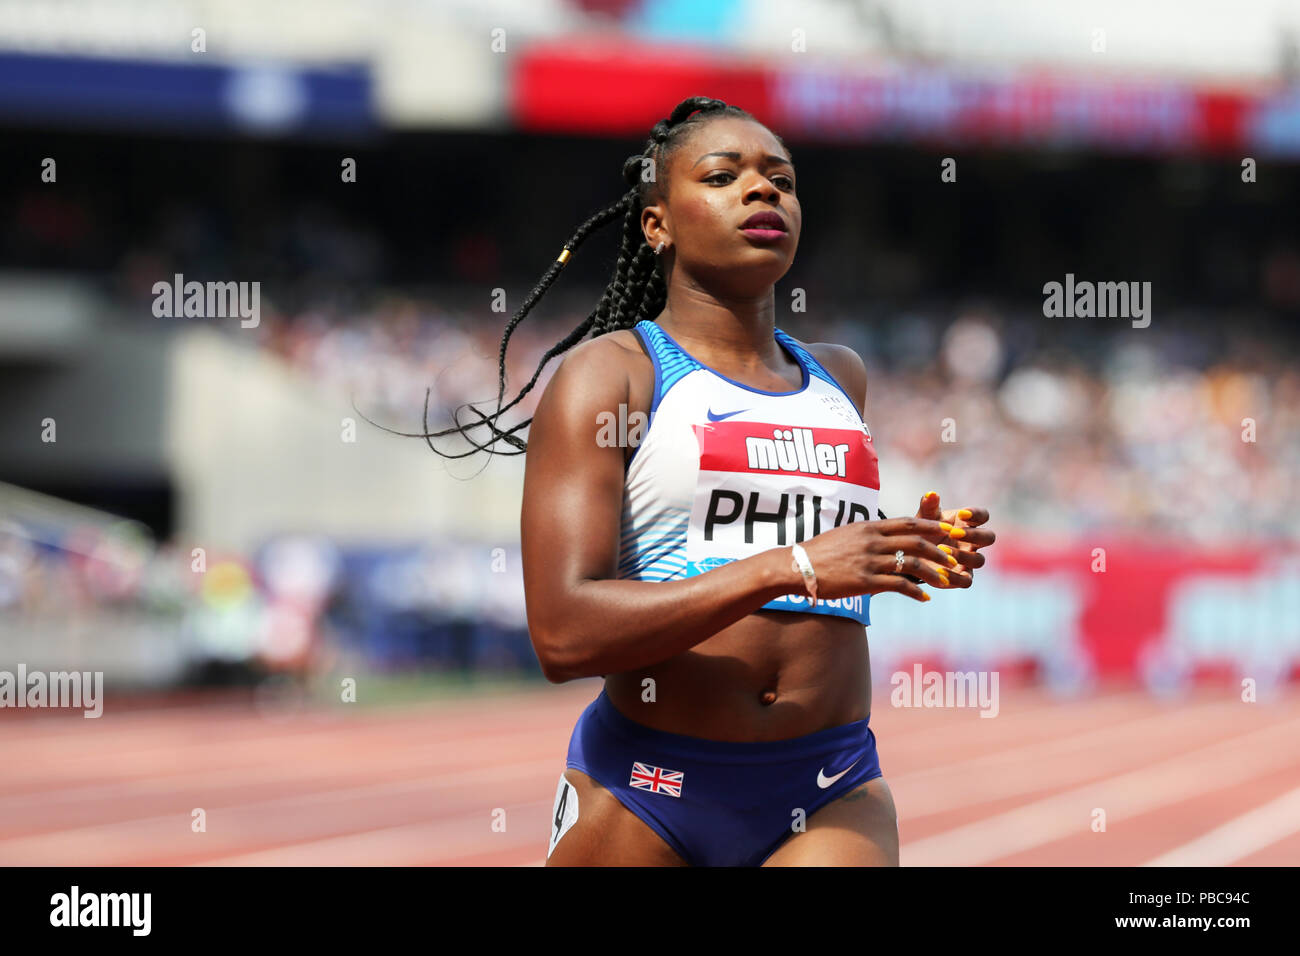 Asha PHILIP (Großbritannien) Überqueren der Ziellinie in der Frauen 100m 2 im Jahr 2018, IAAF Diamond League, Jubiläum Spiele, Queen Elizabeth Olympic Park, Stratford, London, UK. Stockfoto